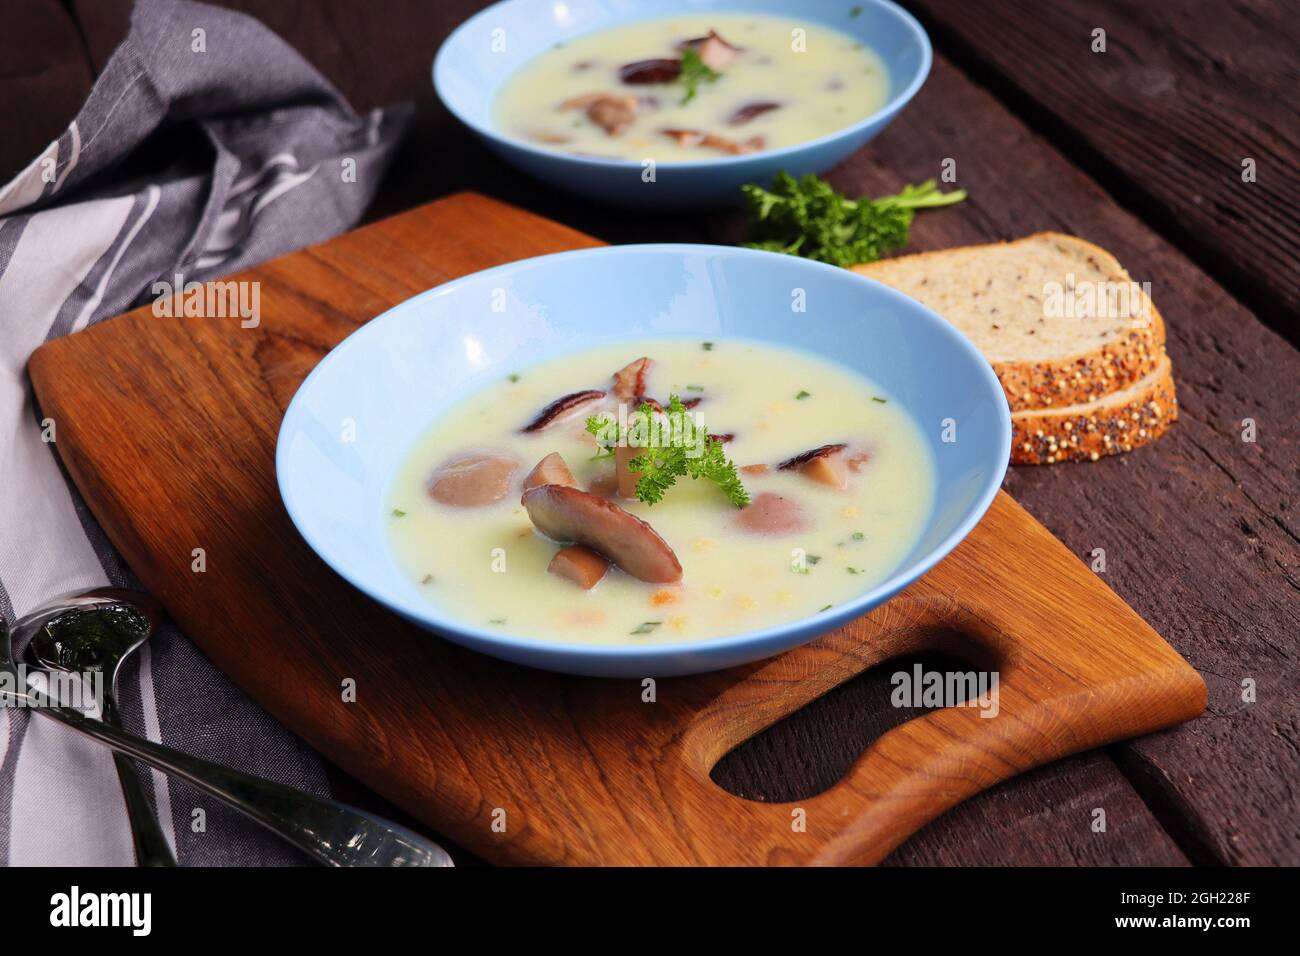 Zuppa cremosa con funghi porcini e erbe aromatiche su tavola di legno Foto Stock